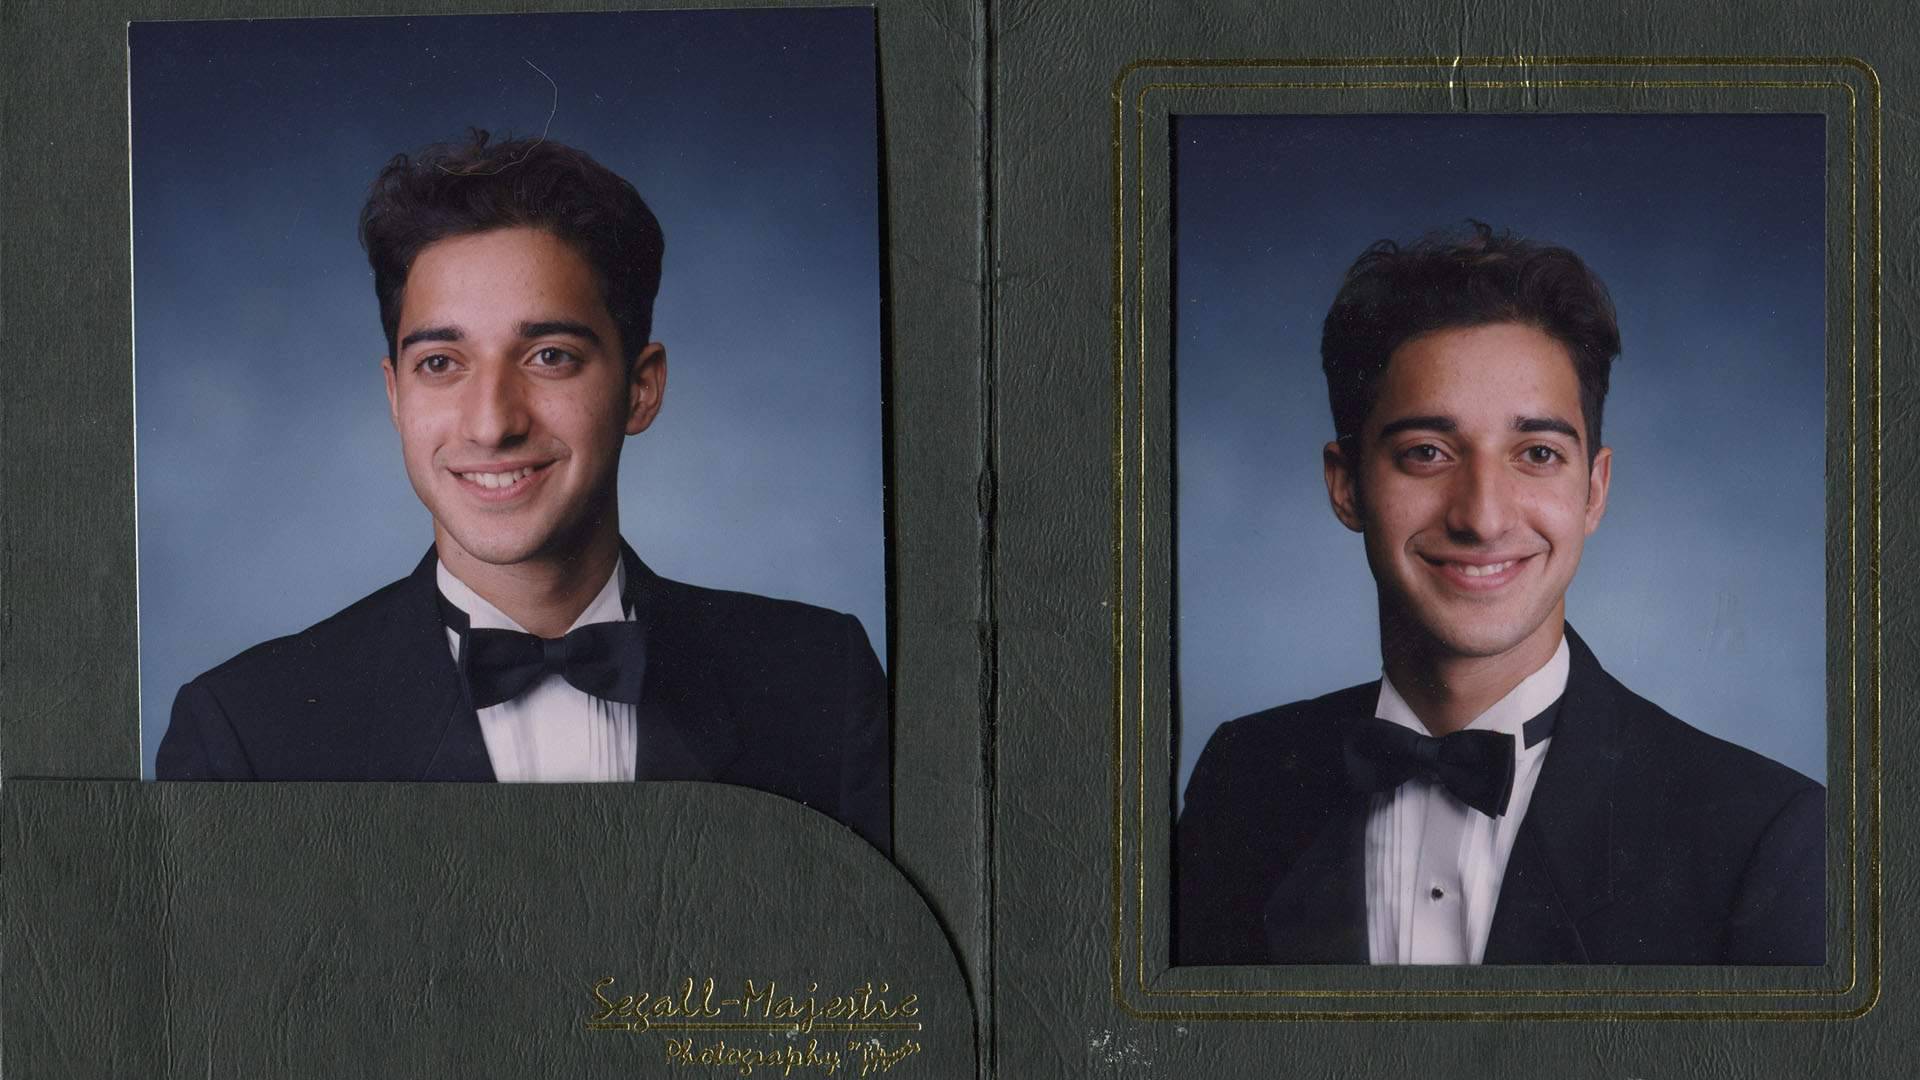 High school photos of Adnan Syed